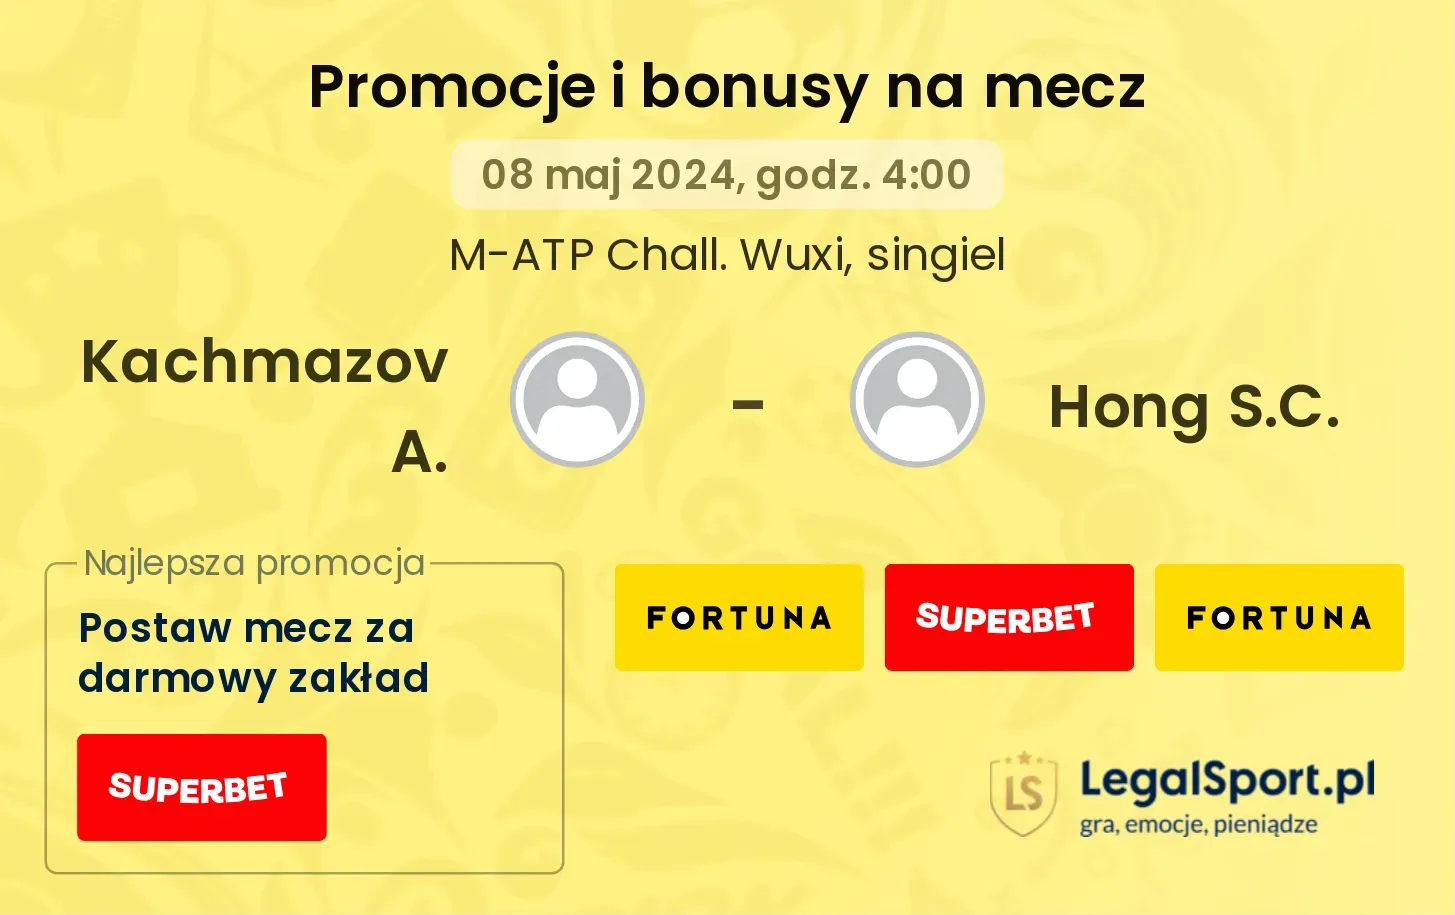 Kachmazov A. - Hong S.C. promocje bonusy na mecz